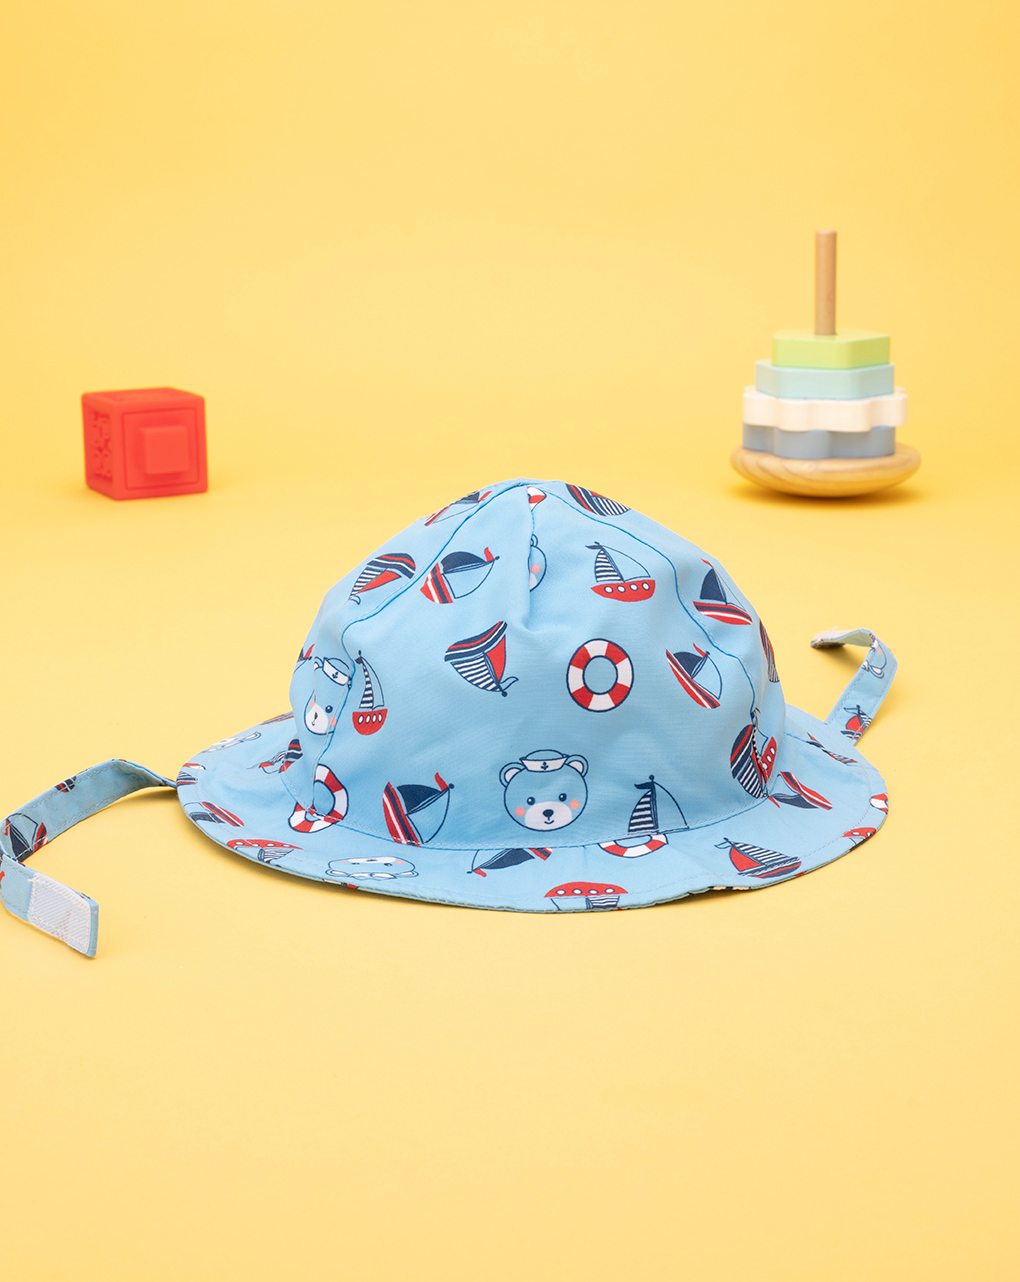 βρεφικό καπέλο θαλάσσης γαλάζιο με καραβάκια για αγόρι - Prénatal